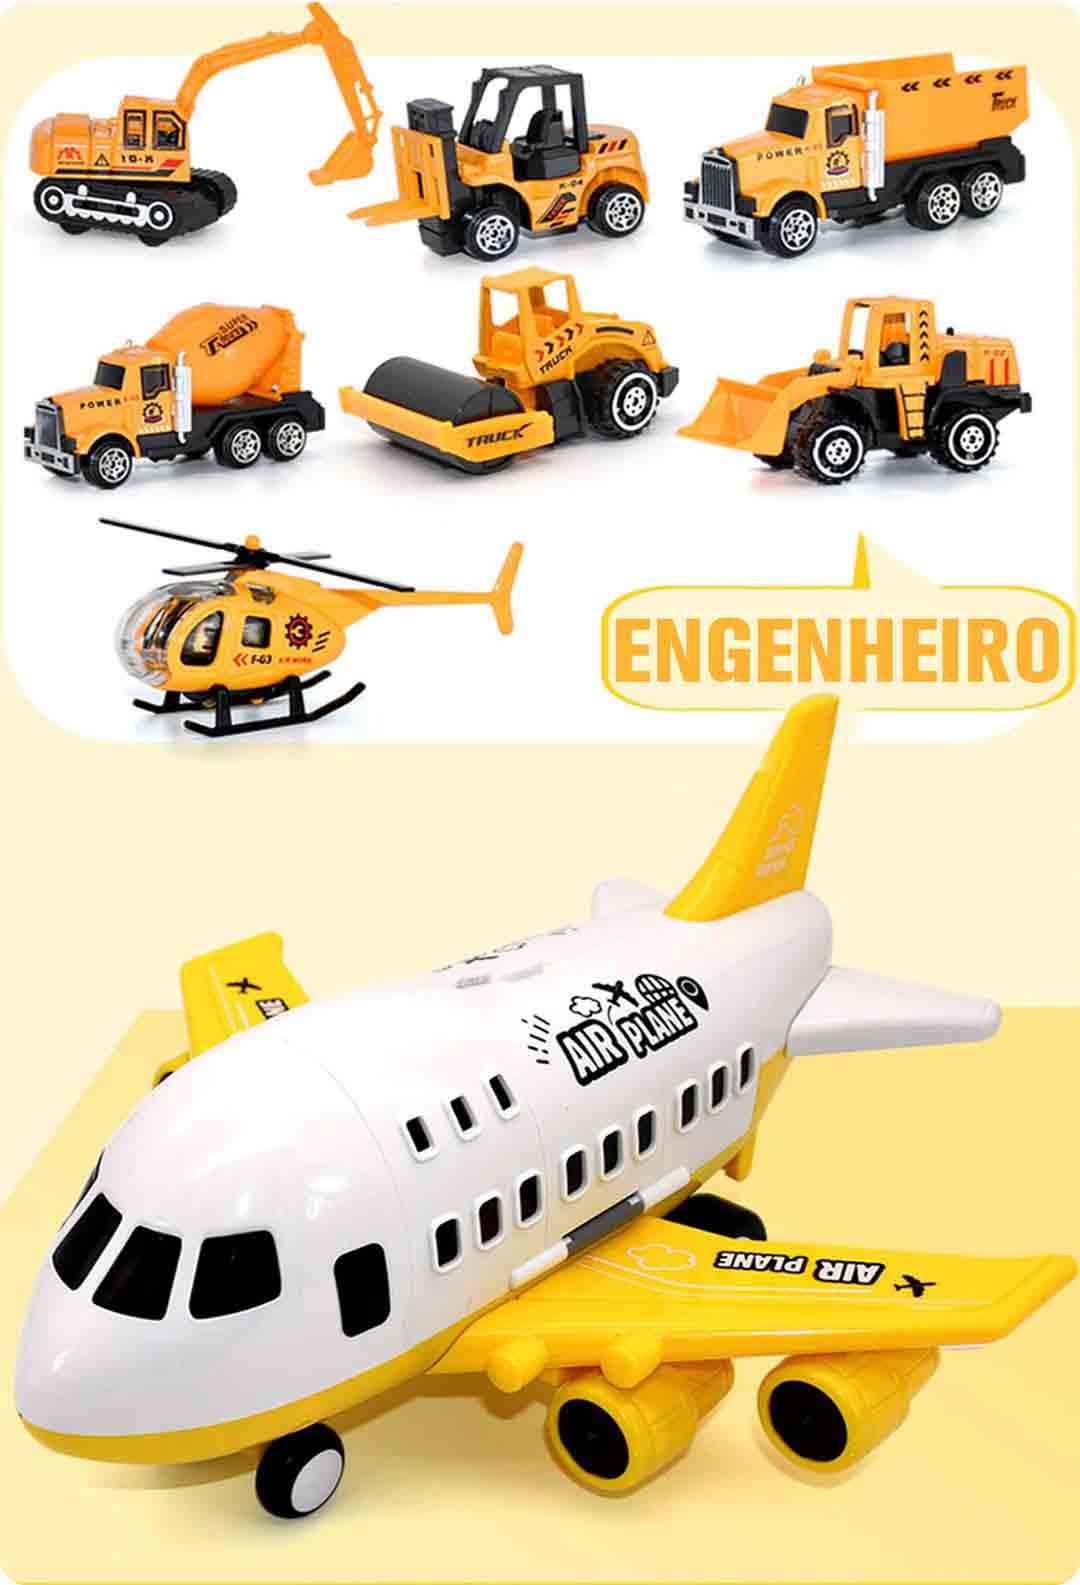 Modelo Engenheiro do Jumbo® Avião de Brinquedo c/ 6 Super Carrinhos Disponível em: www.descontara.com